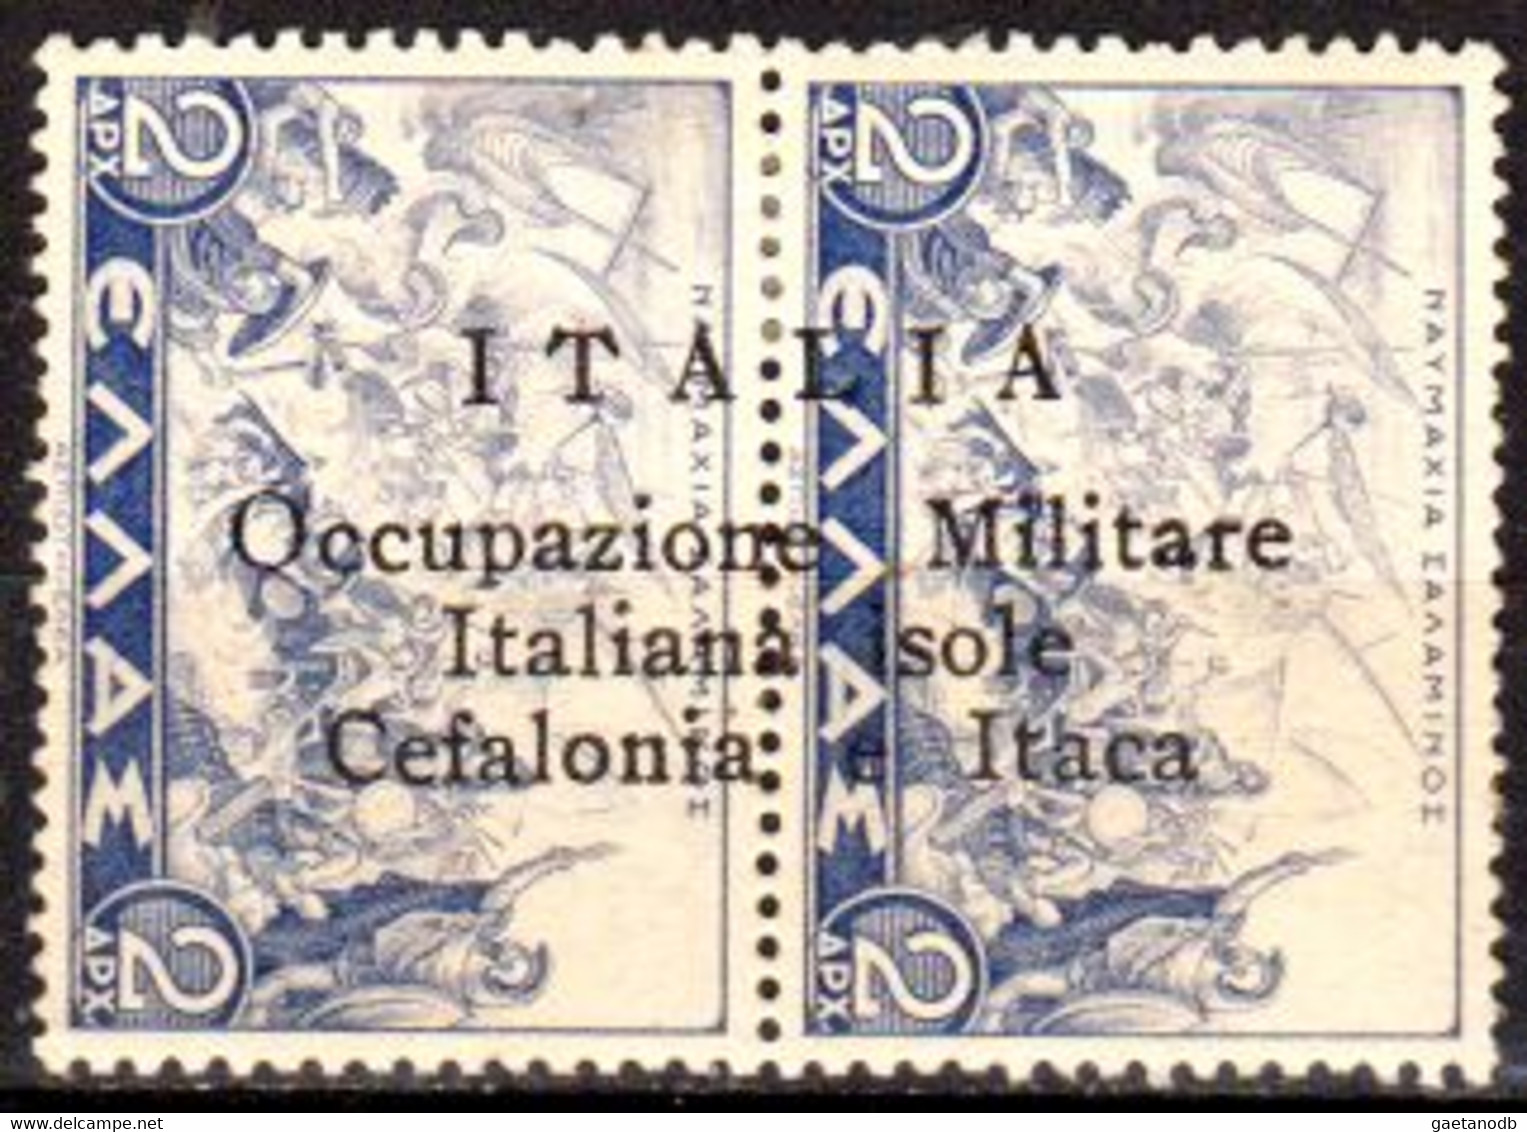 Italia-G-0928 - Occupazione Cefalonia E Itaca 1941, N.17 (+) LH - Qualità A Vostro Giudizio. - Cefalonia & Itaca